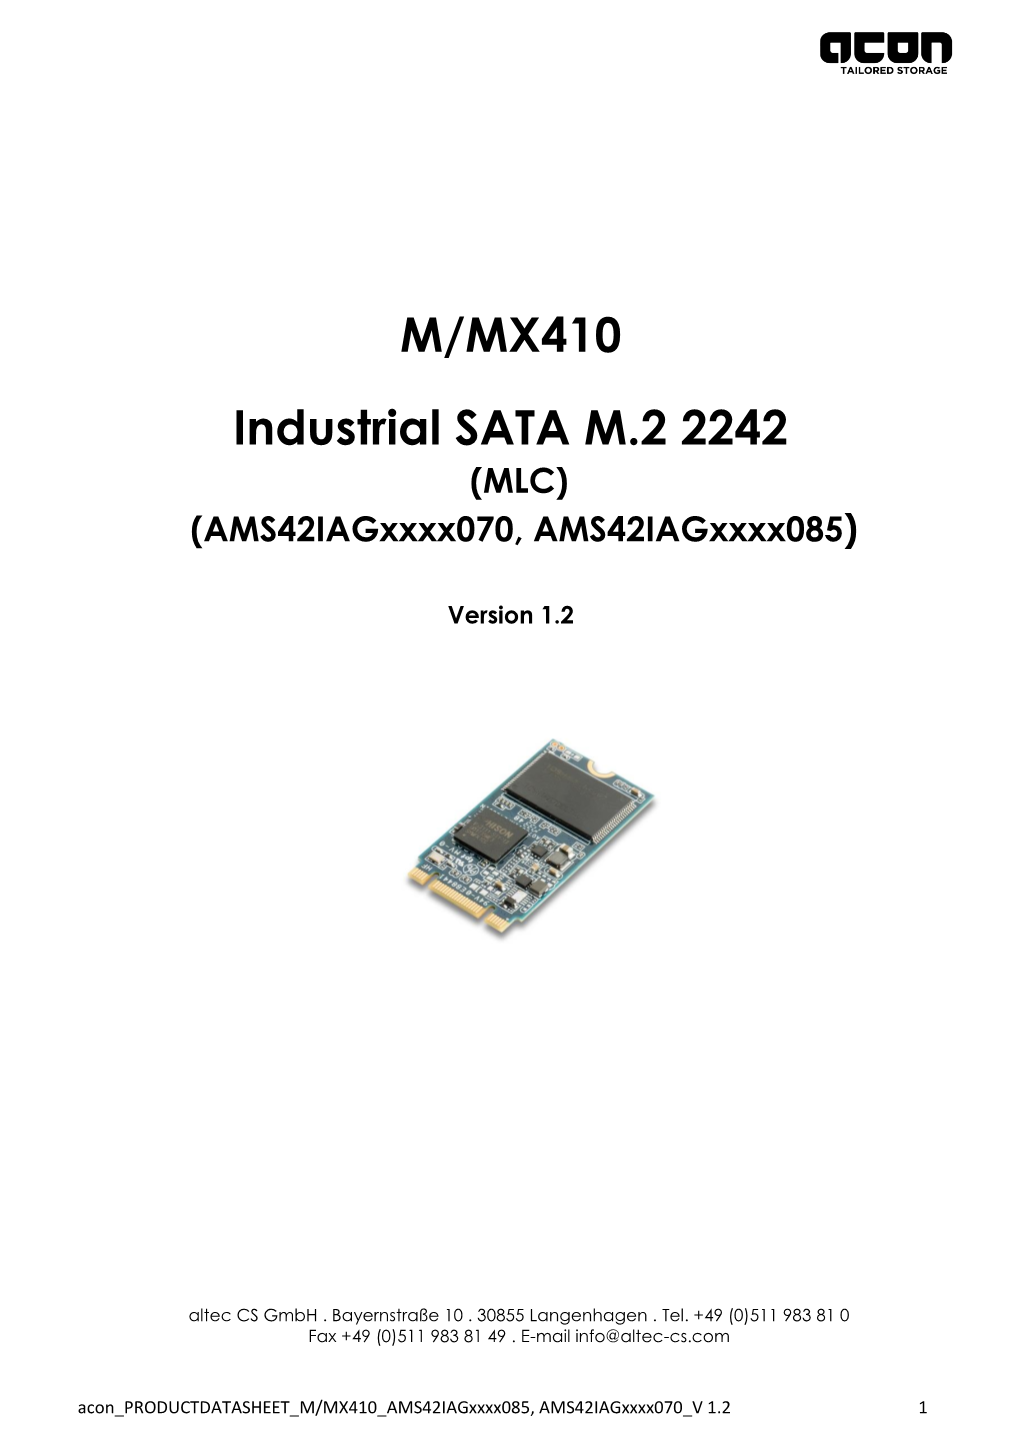 M/MX410 Industrial SATA M.2 2242 (MLC) (Ams42iagxxxx070, Ams42iagxxxx085)